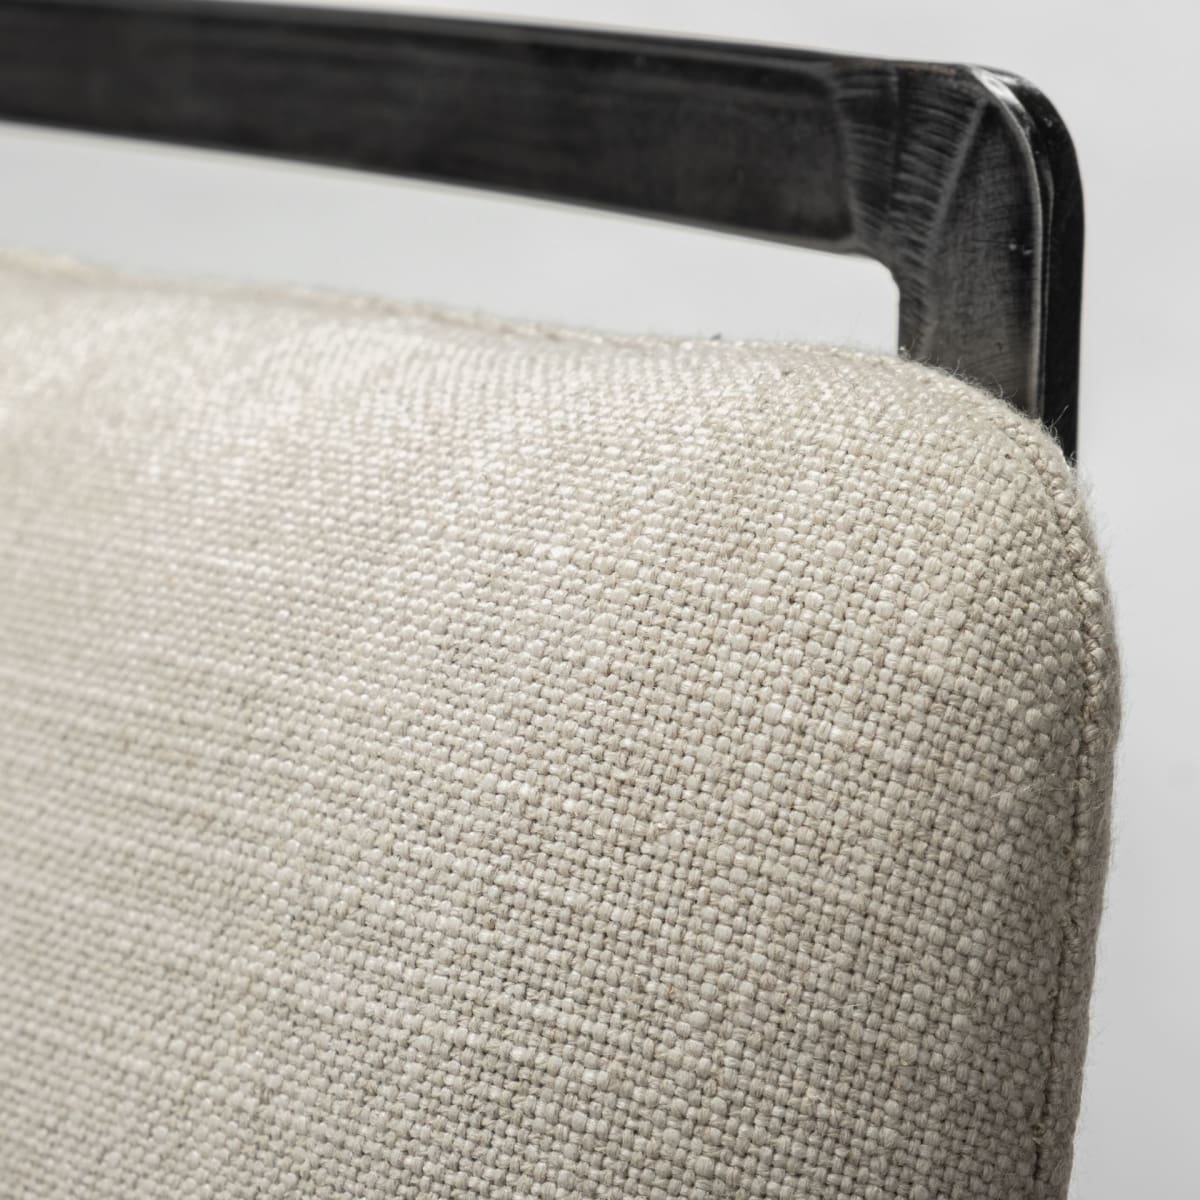 Kavalan Bar Counter Stool Beige Fabric | Gray Metal | Bar - bar-stools